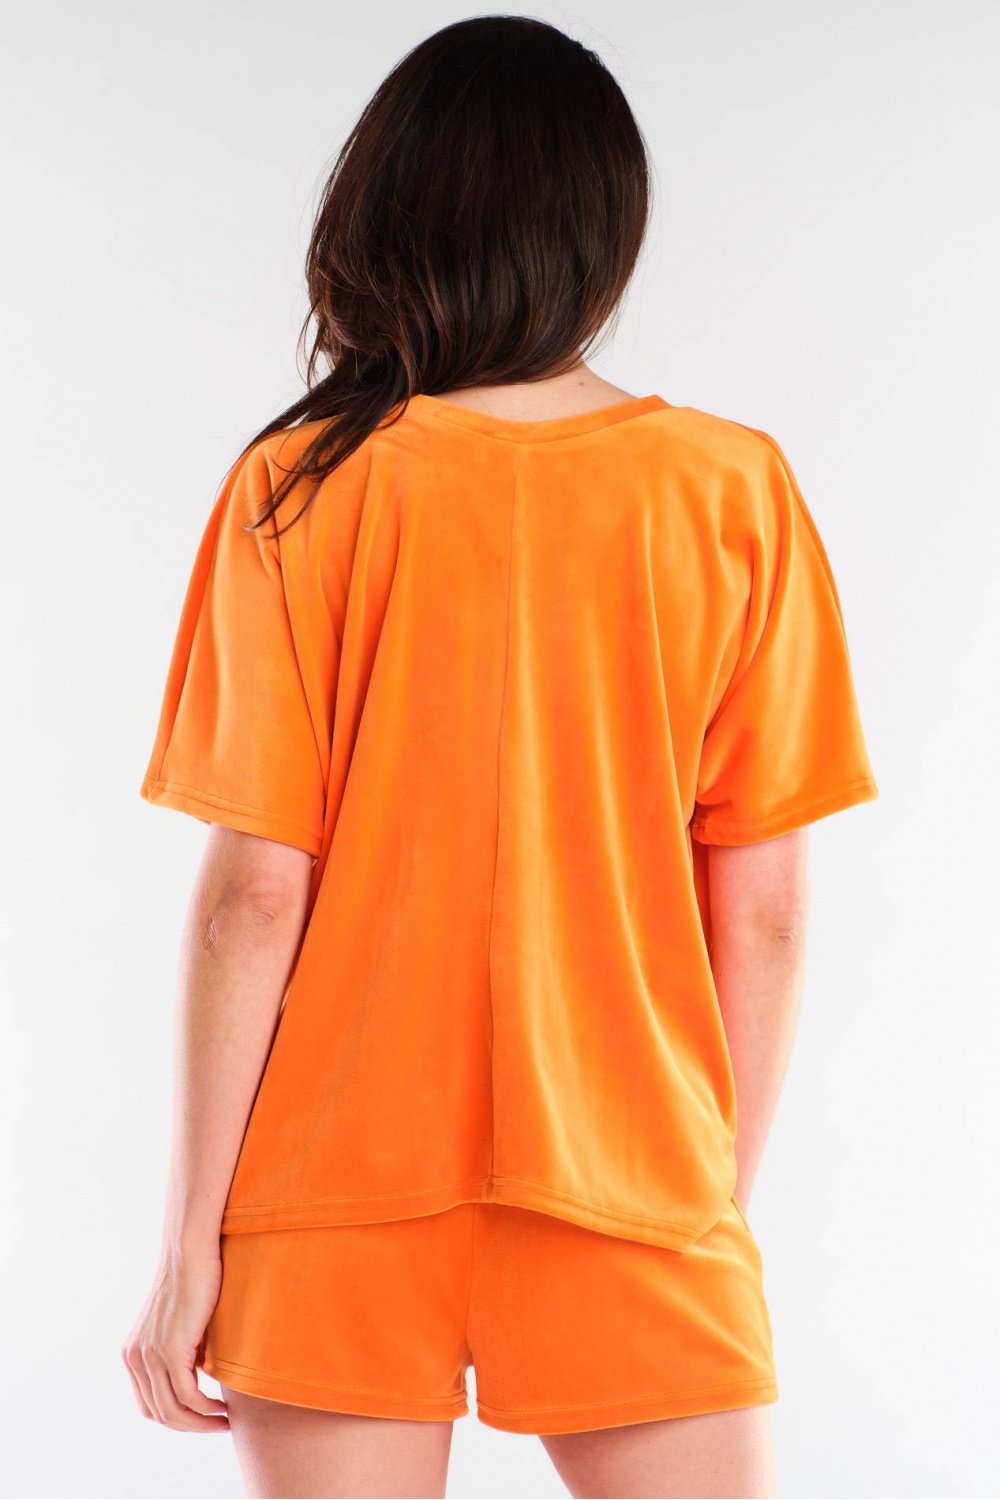 Shorts model 154796 awama orange Damen